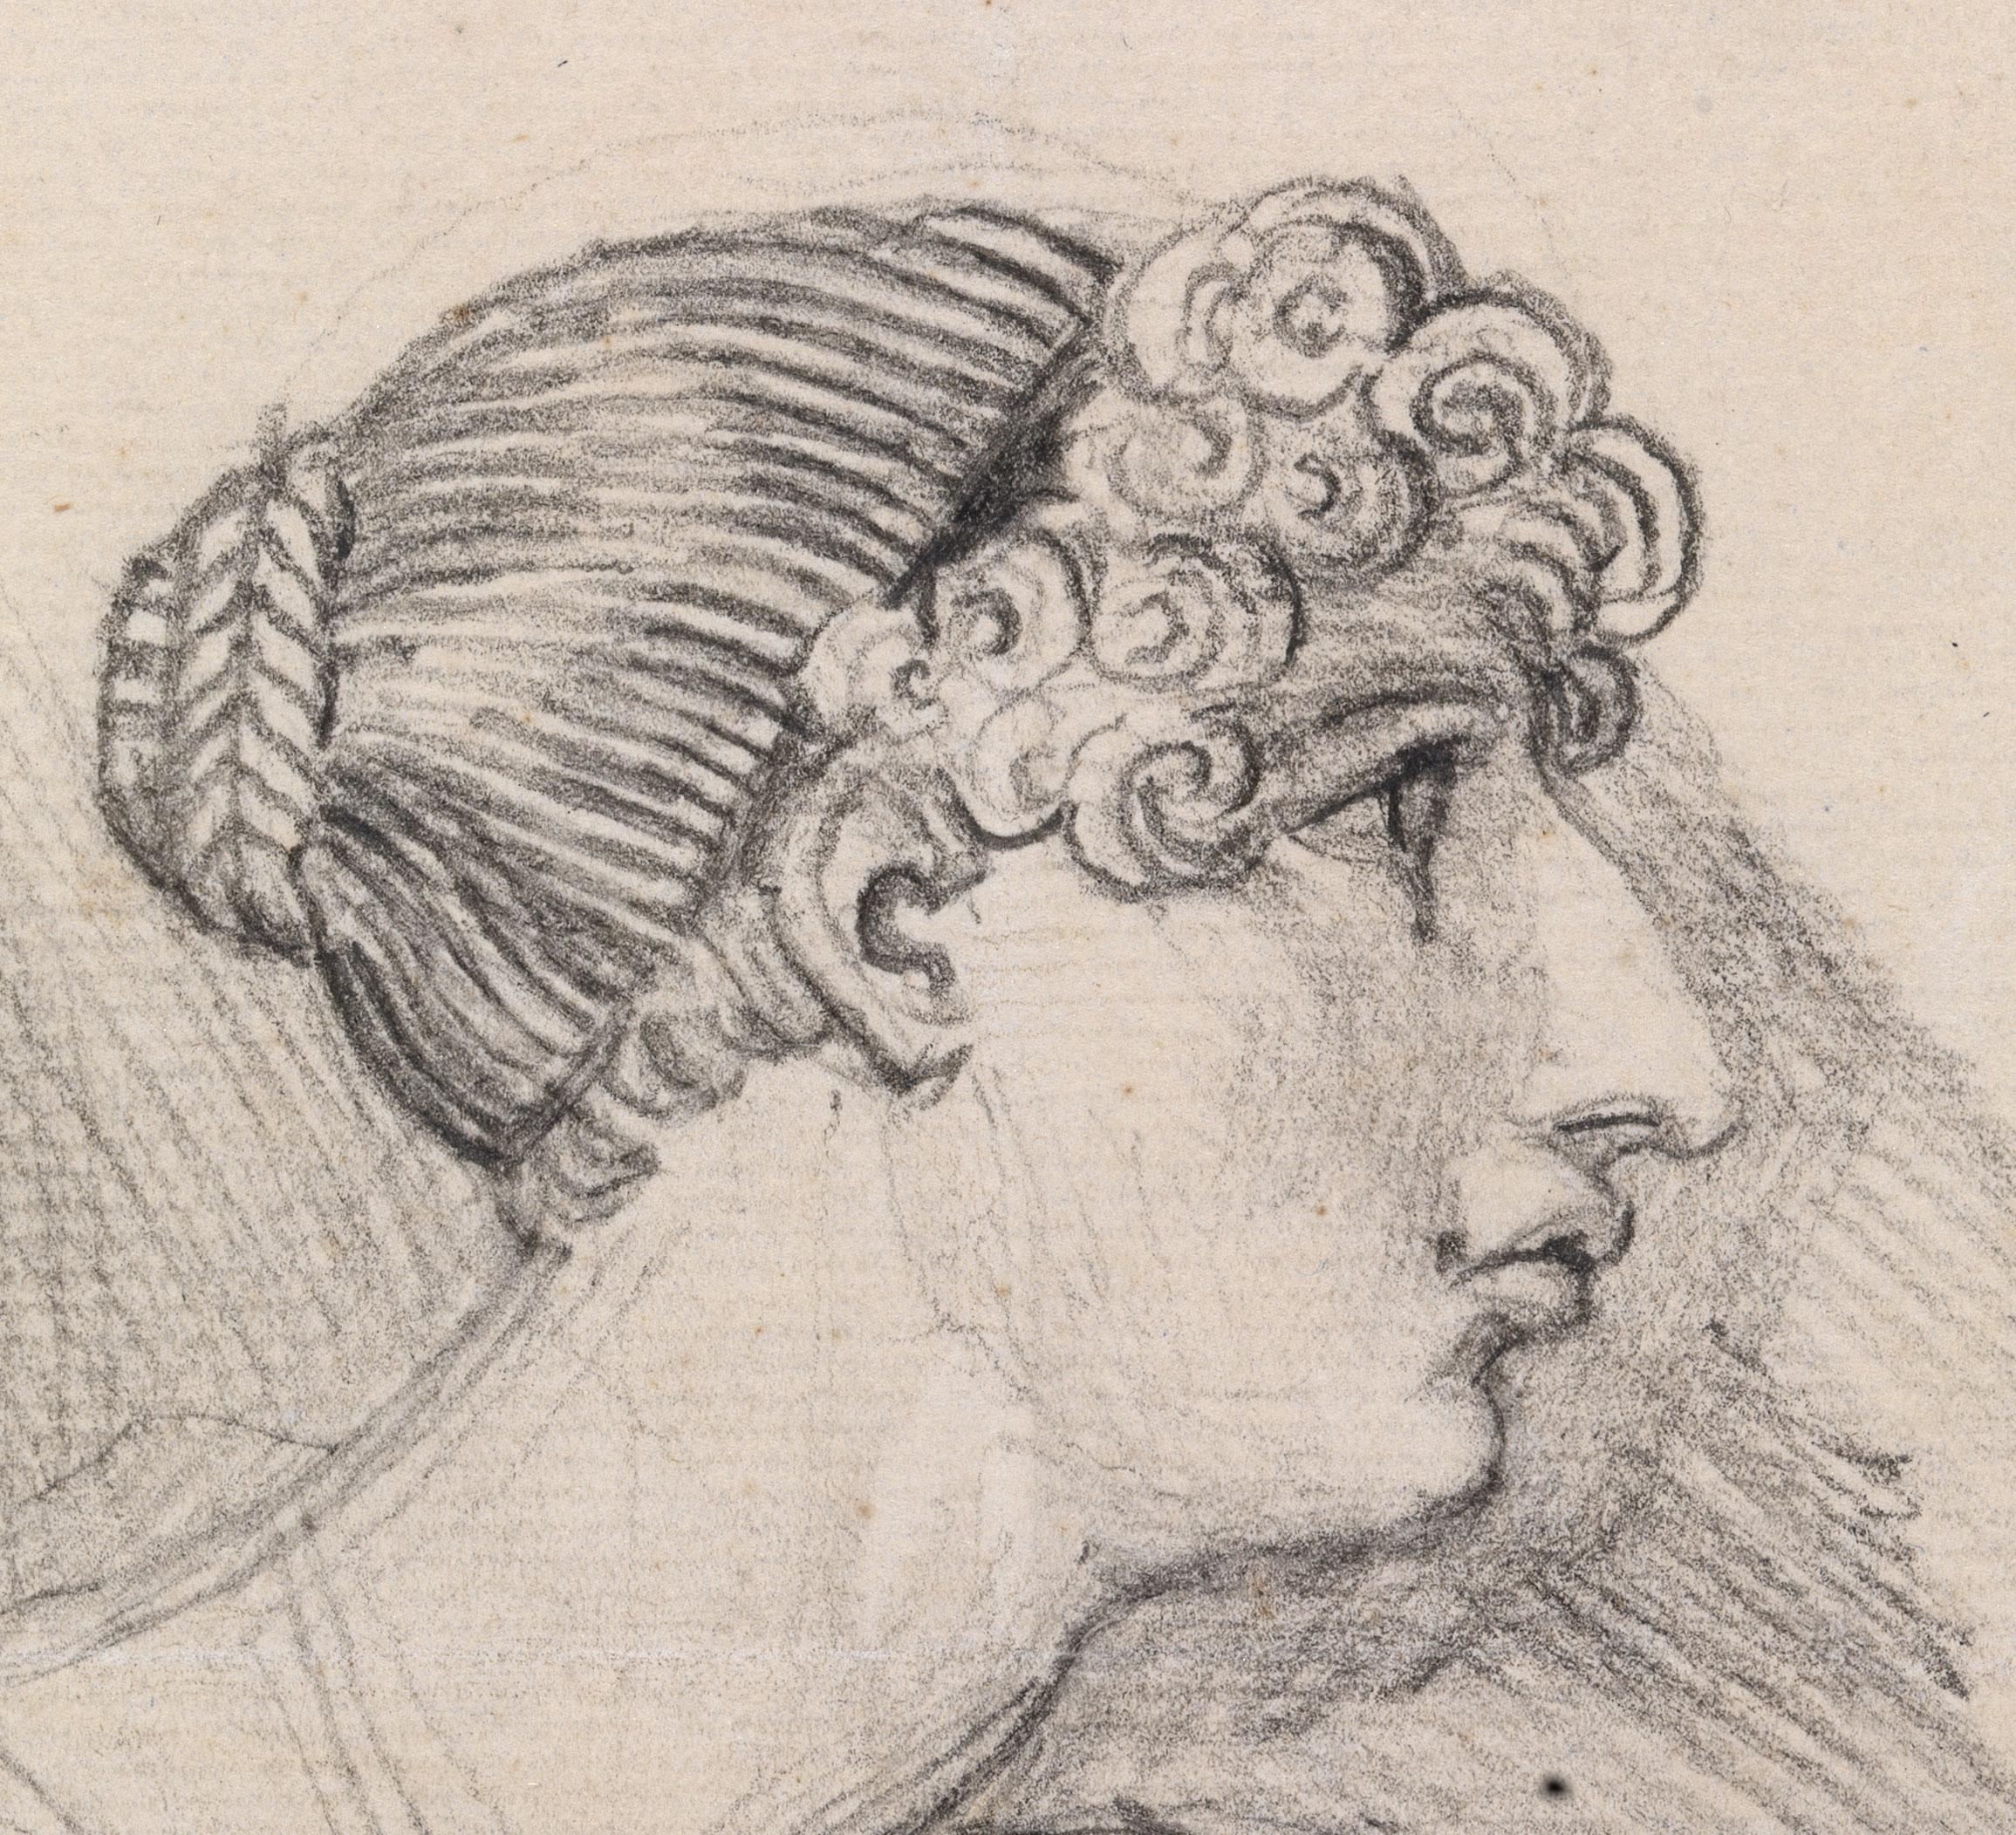 Porträtzeichnung von Harriot Mellon, Frau Thomas Coutts (Beige), Portrait, von Henry Fuseli